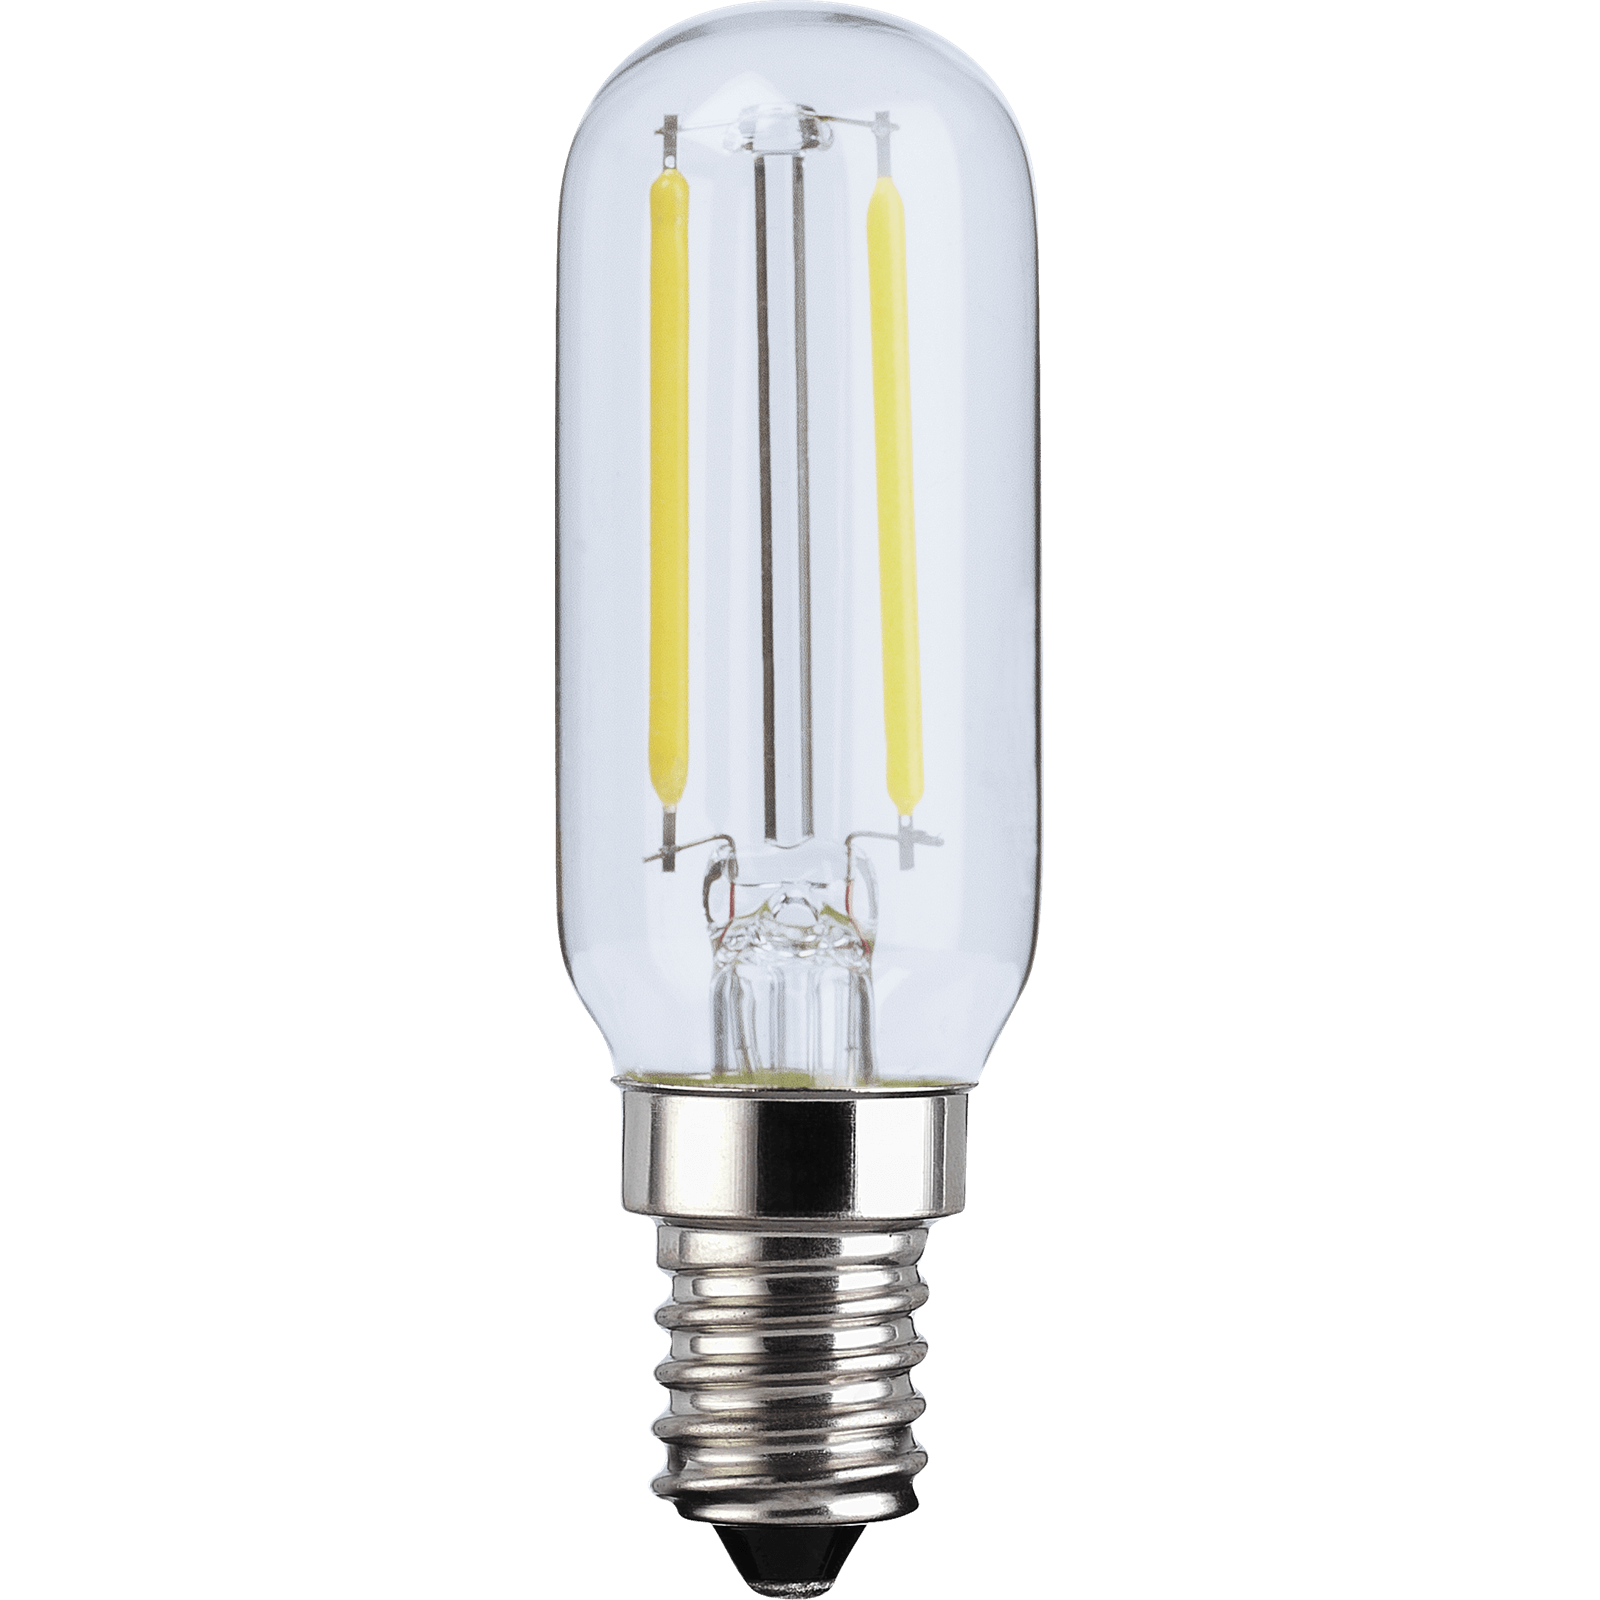 TCP LED Filament T25 2.8W Cooker Hood Light Bulb